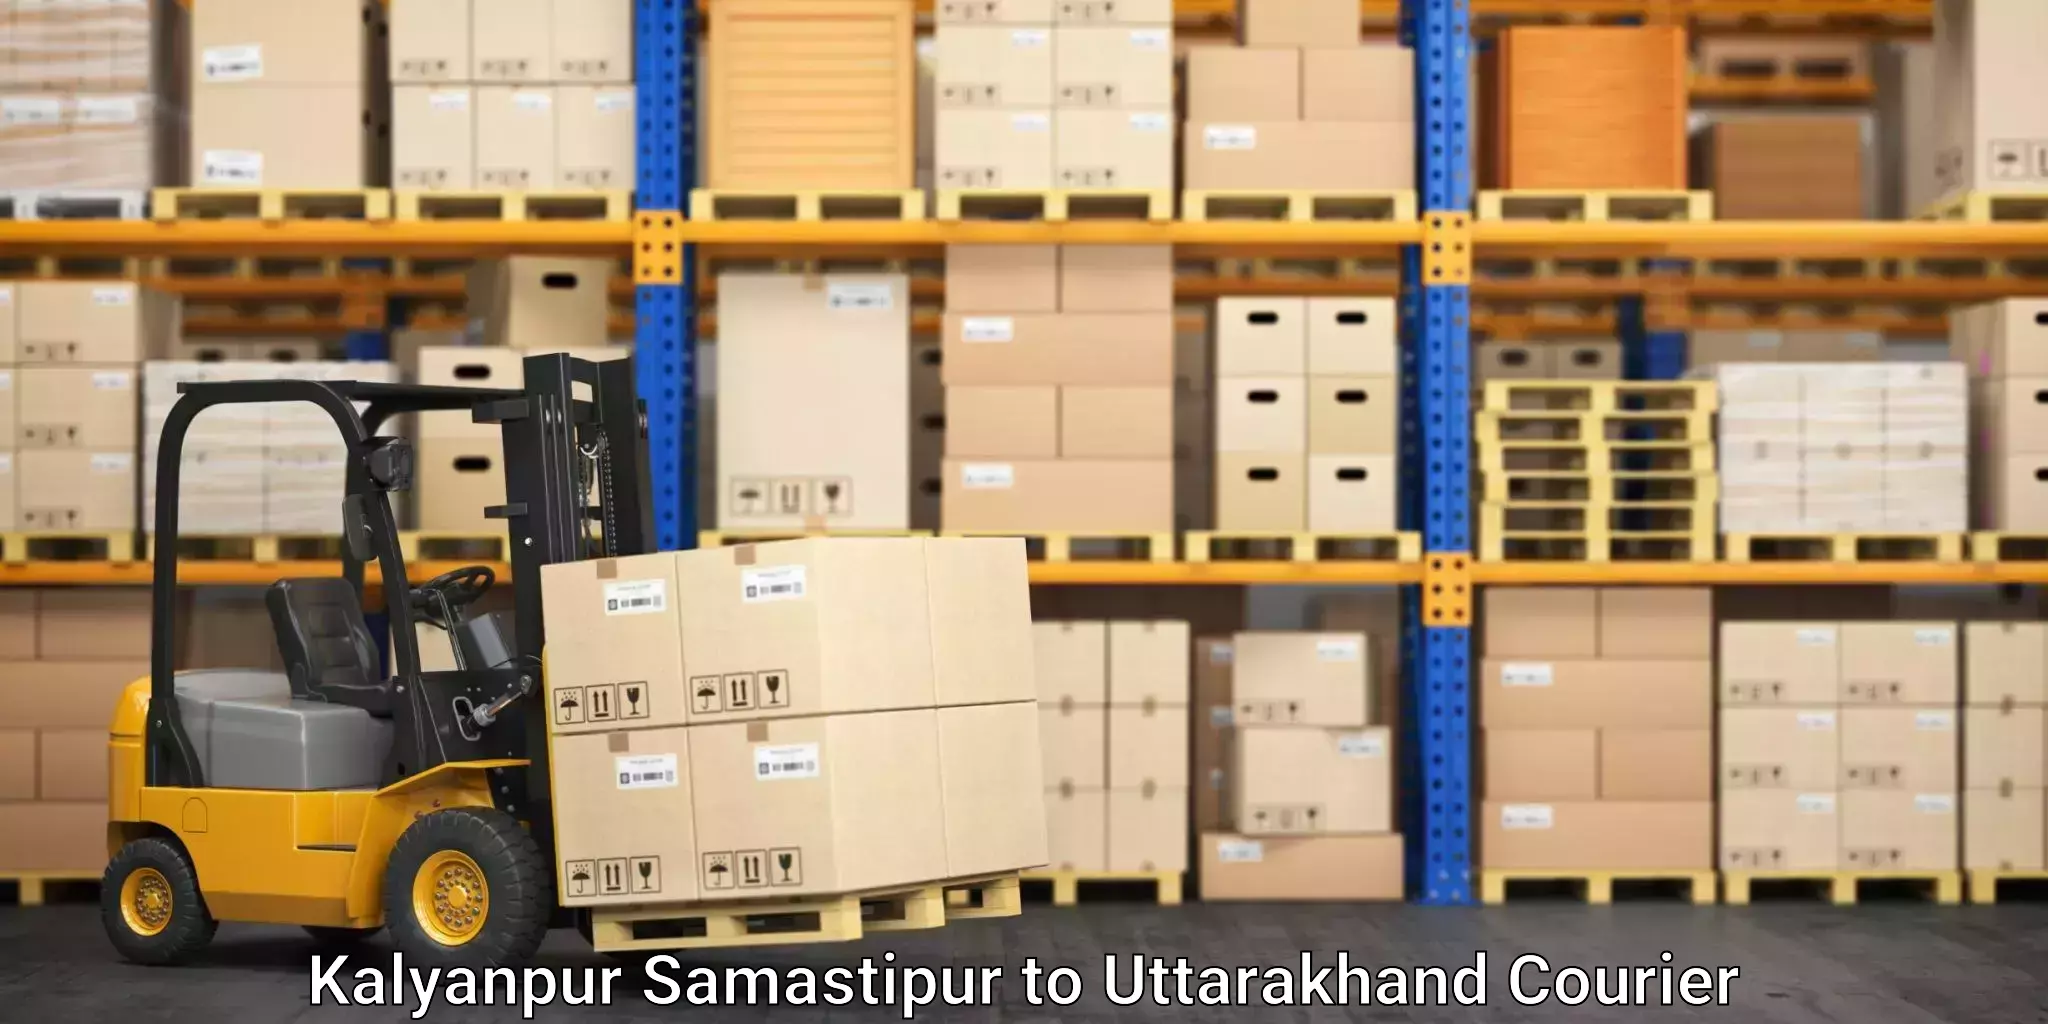 Furniture moving service Kalyanpur Samastipur to Rishikesh